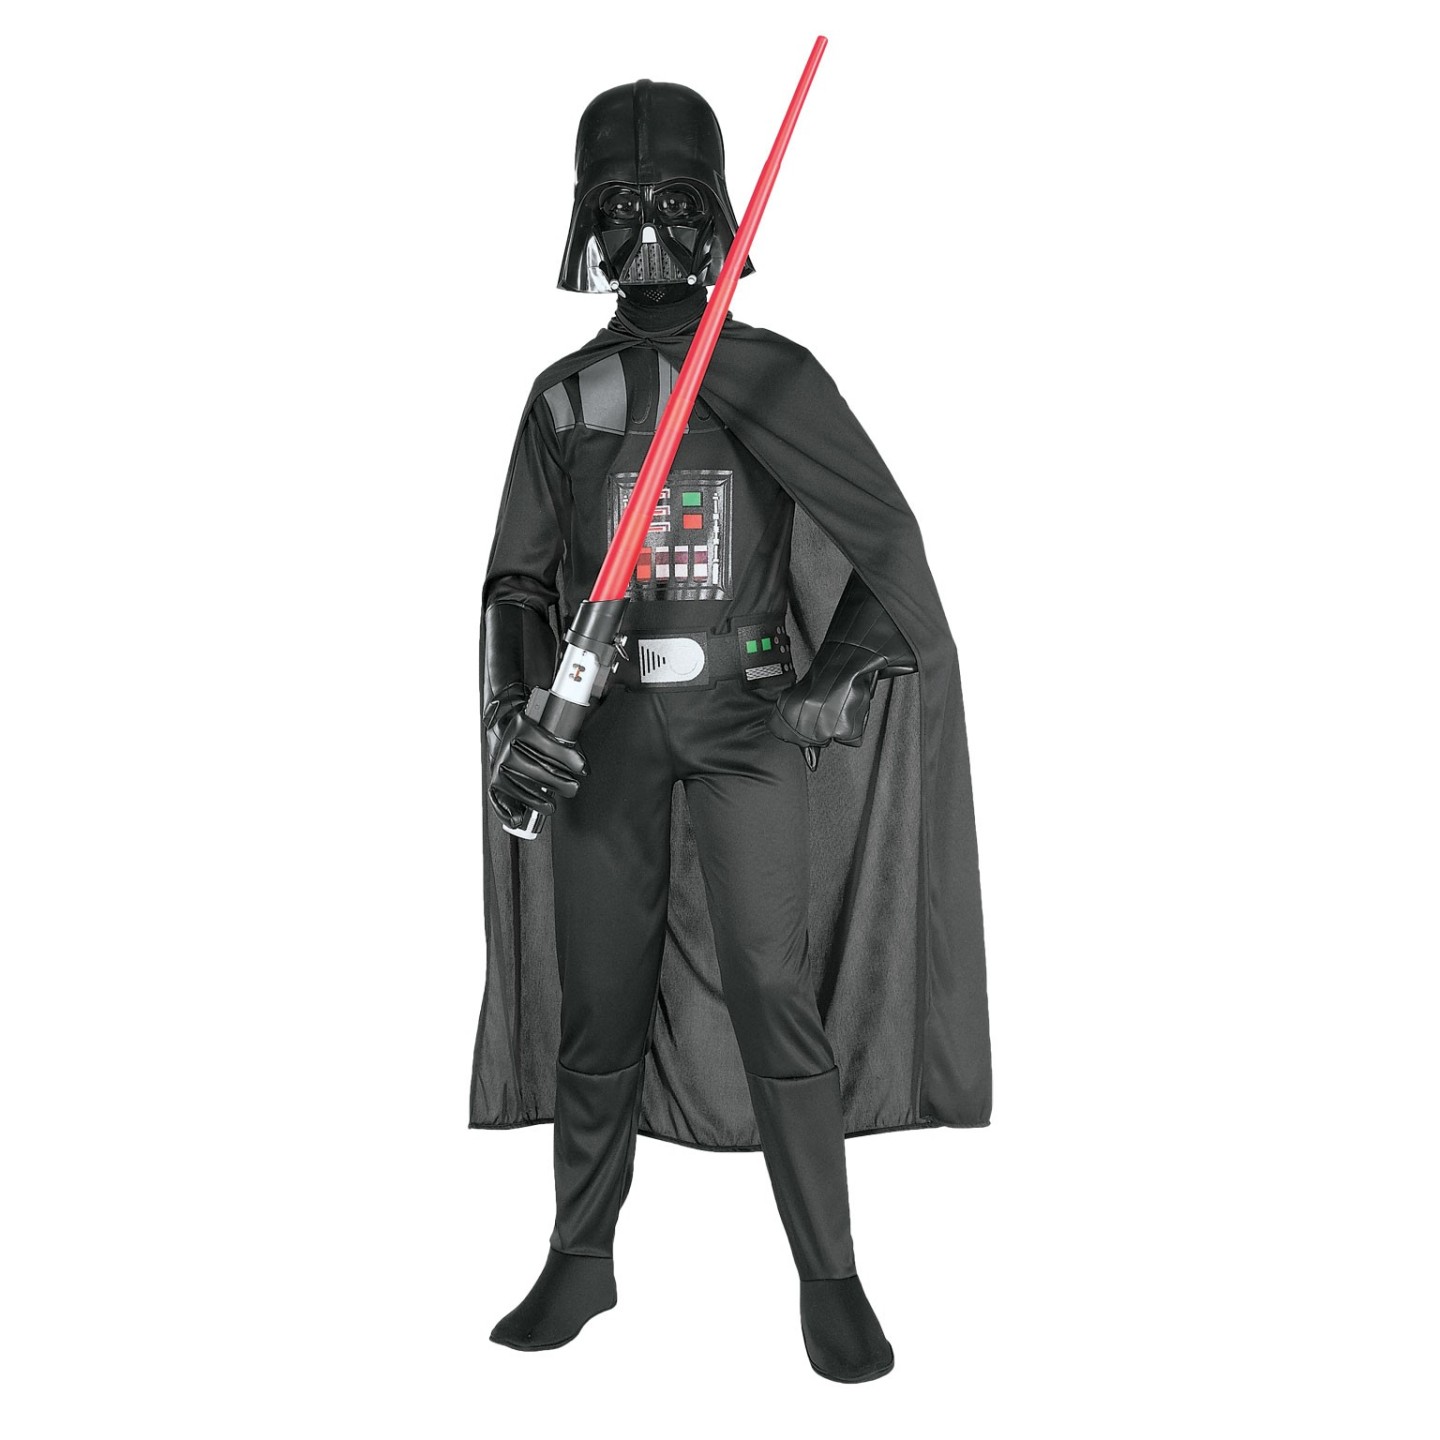 Ramen wassen Doorlaatbaarheid Onaangenaam Star Wars kostuum - Darth Vader pak kind kopen ? | Jokershop.be